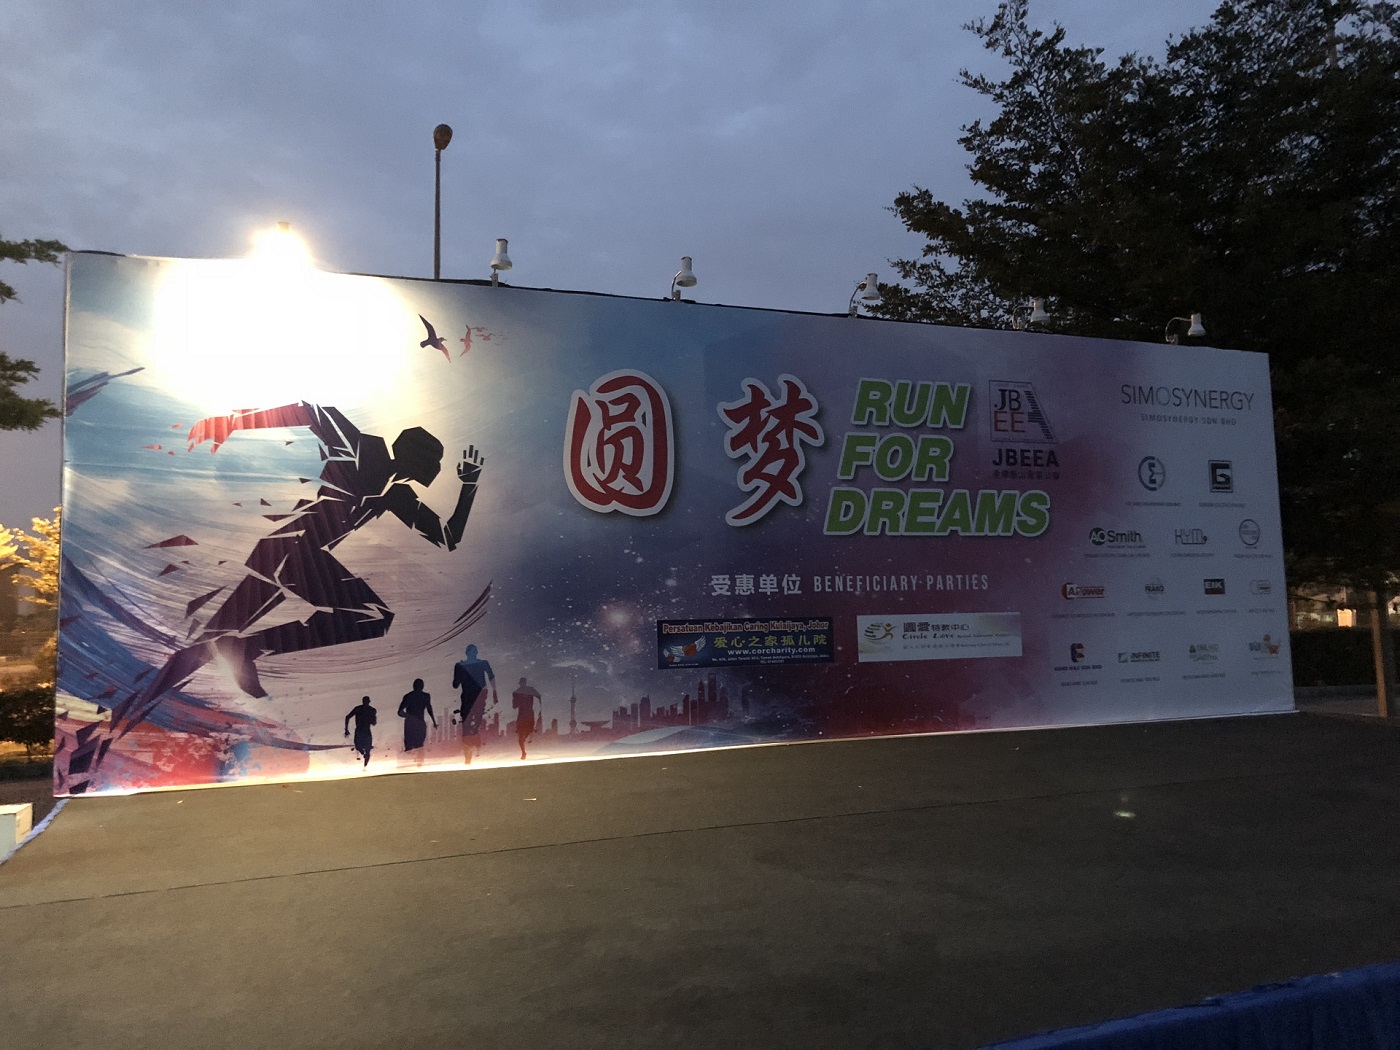 JBEEA Charity 5km Run For Dreams (Date : 19.10.2019)